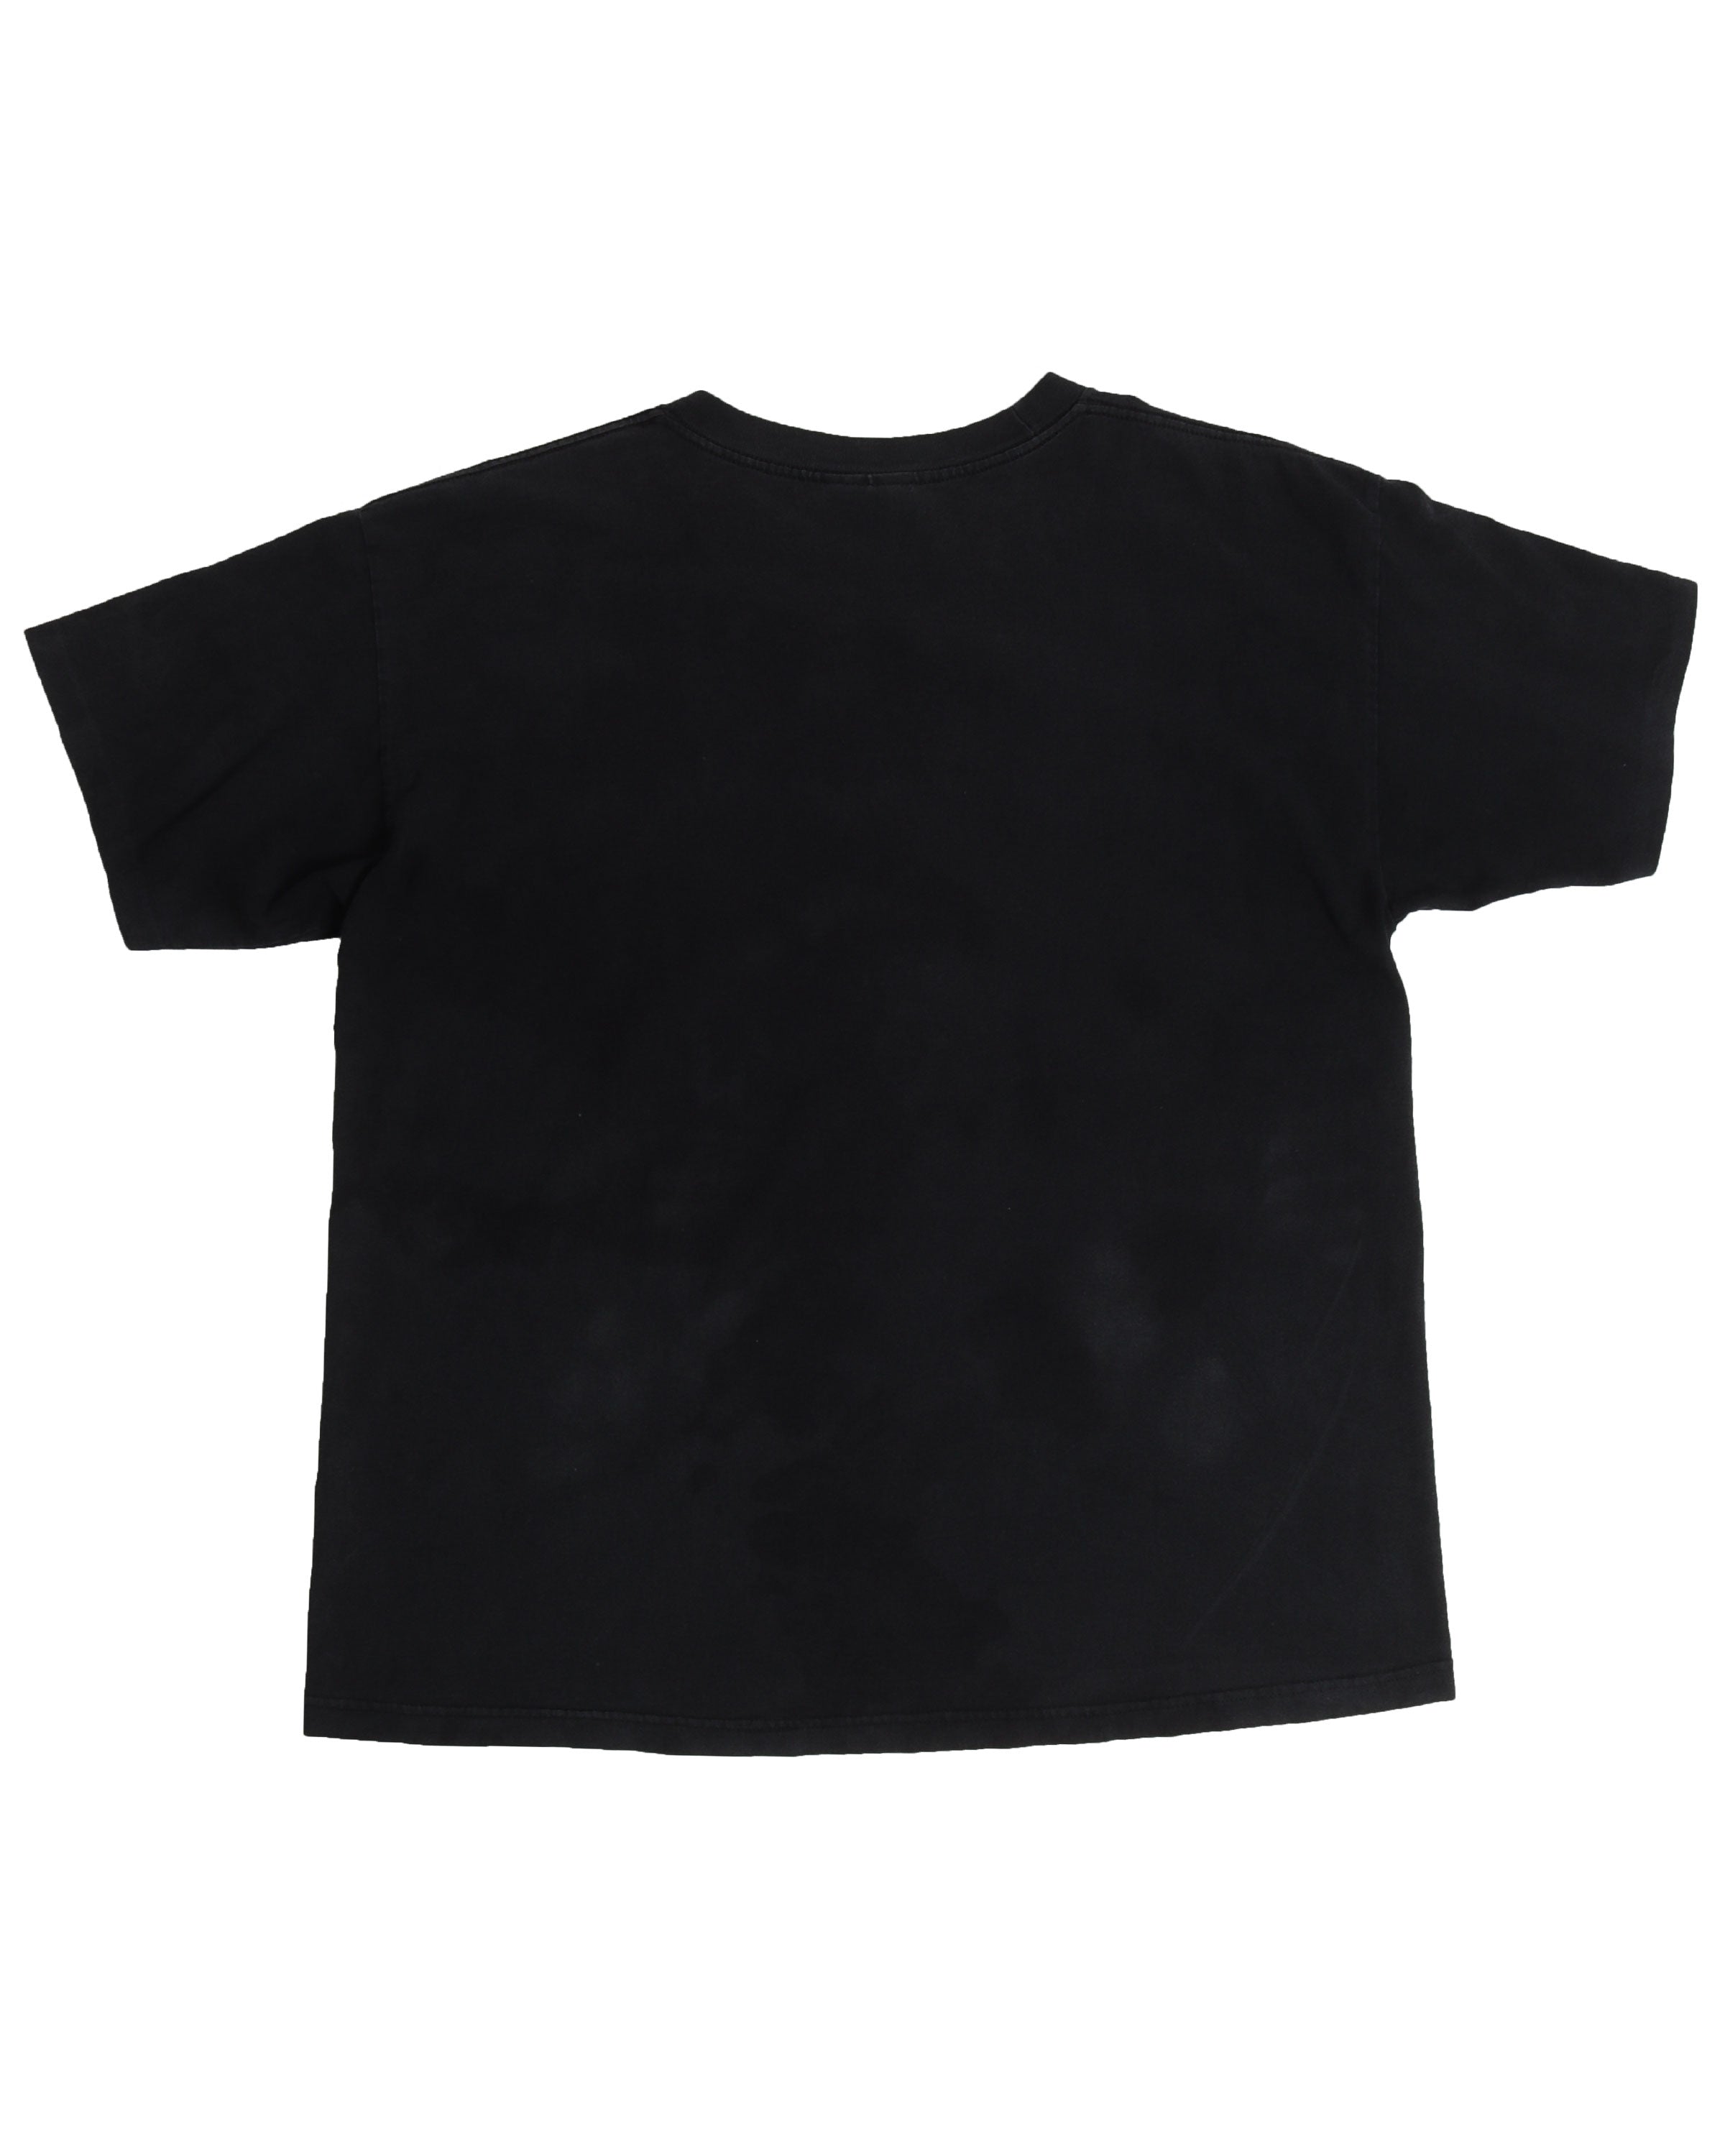 NWO Dennis Rodman T-Shirt